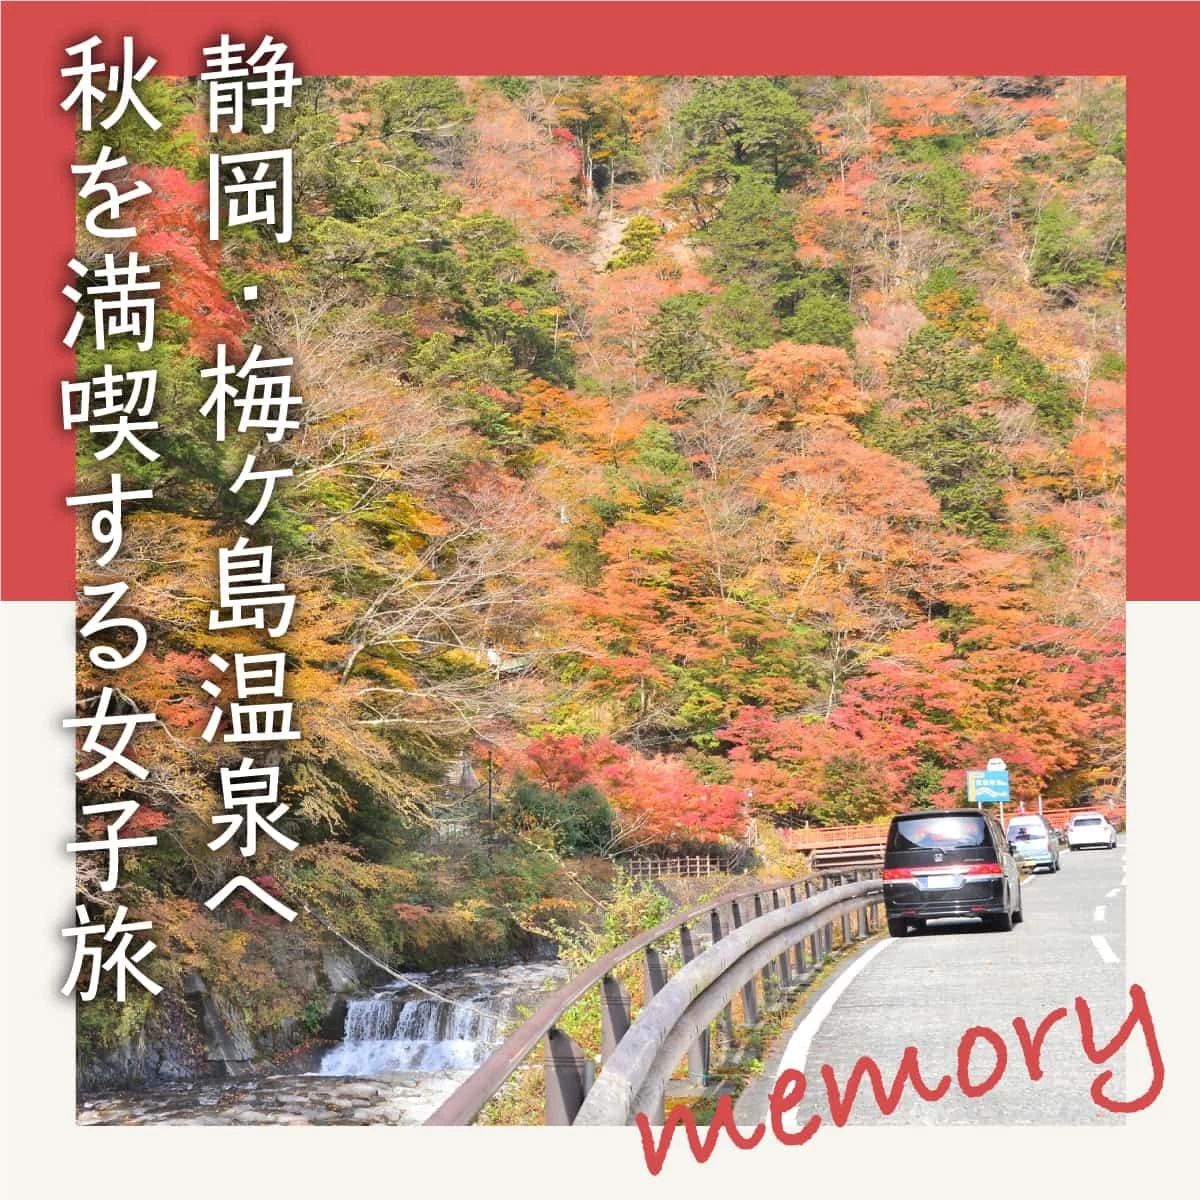 横浜から静岡・梅ヶ島へ日帰り温泉旅。吊り橋も巡る紅葉ドライブ